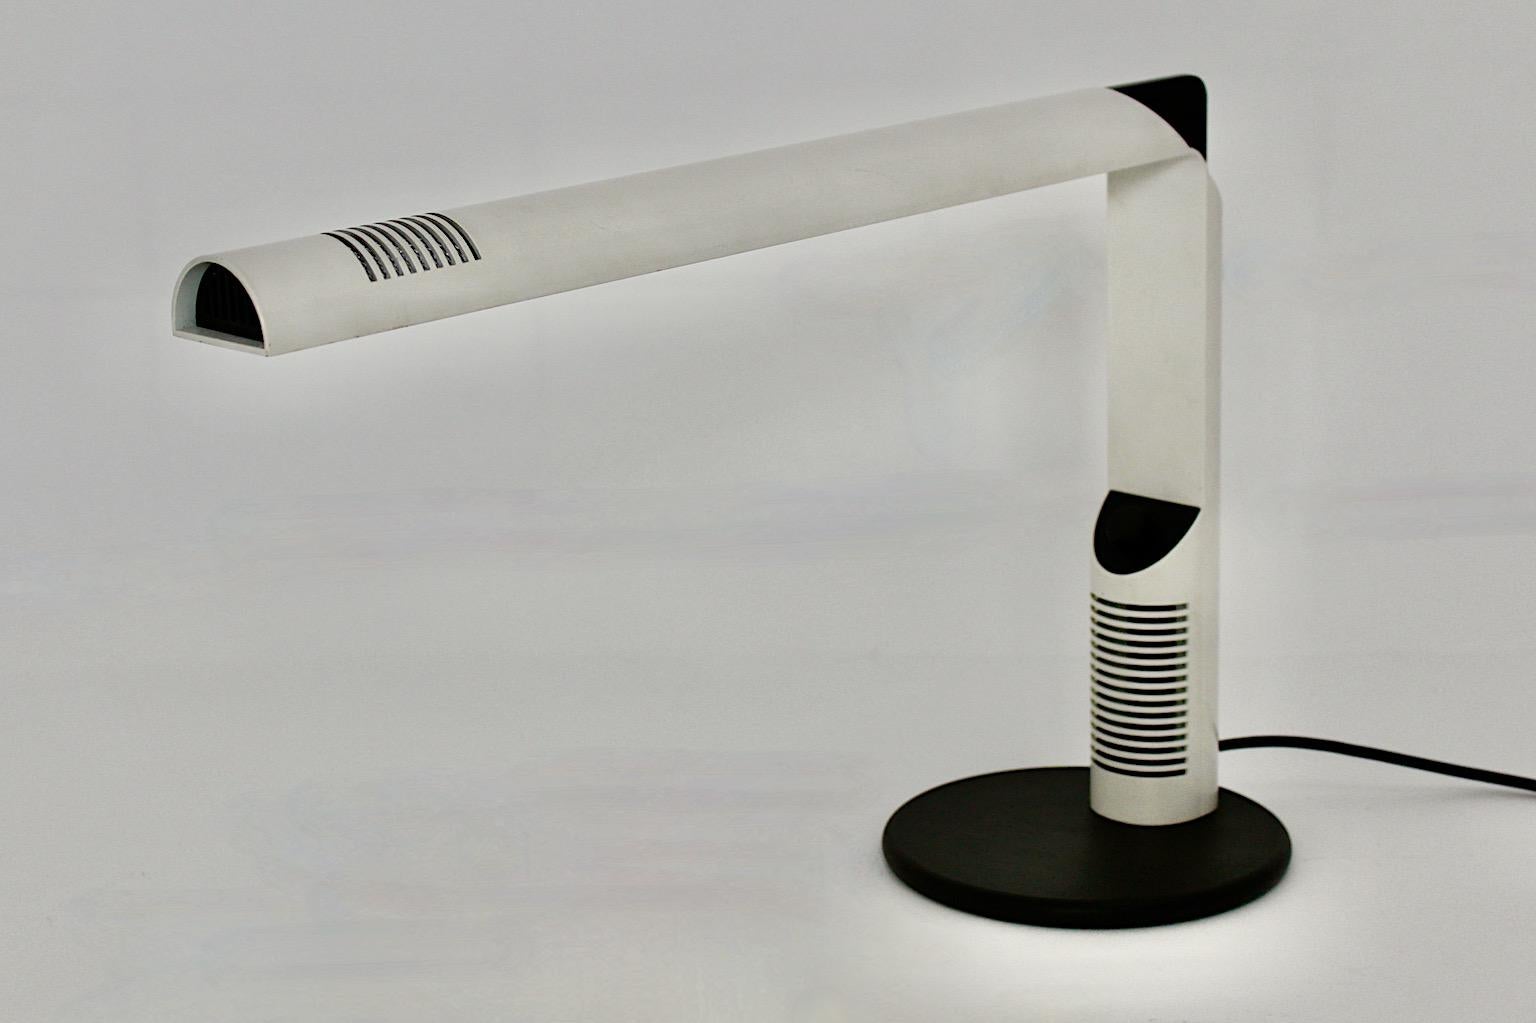 Space Age vintage weiße Tischlampe oder Schreibtischlampe Modell Abele aus weiß lackiertem Metall von Gianfranco Frattini
für Luci Milan 1979.
Die Tischleuchte hat einen weiß lackierten Metallstiel mit einem schwarzen Gummifuß, schwarze